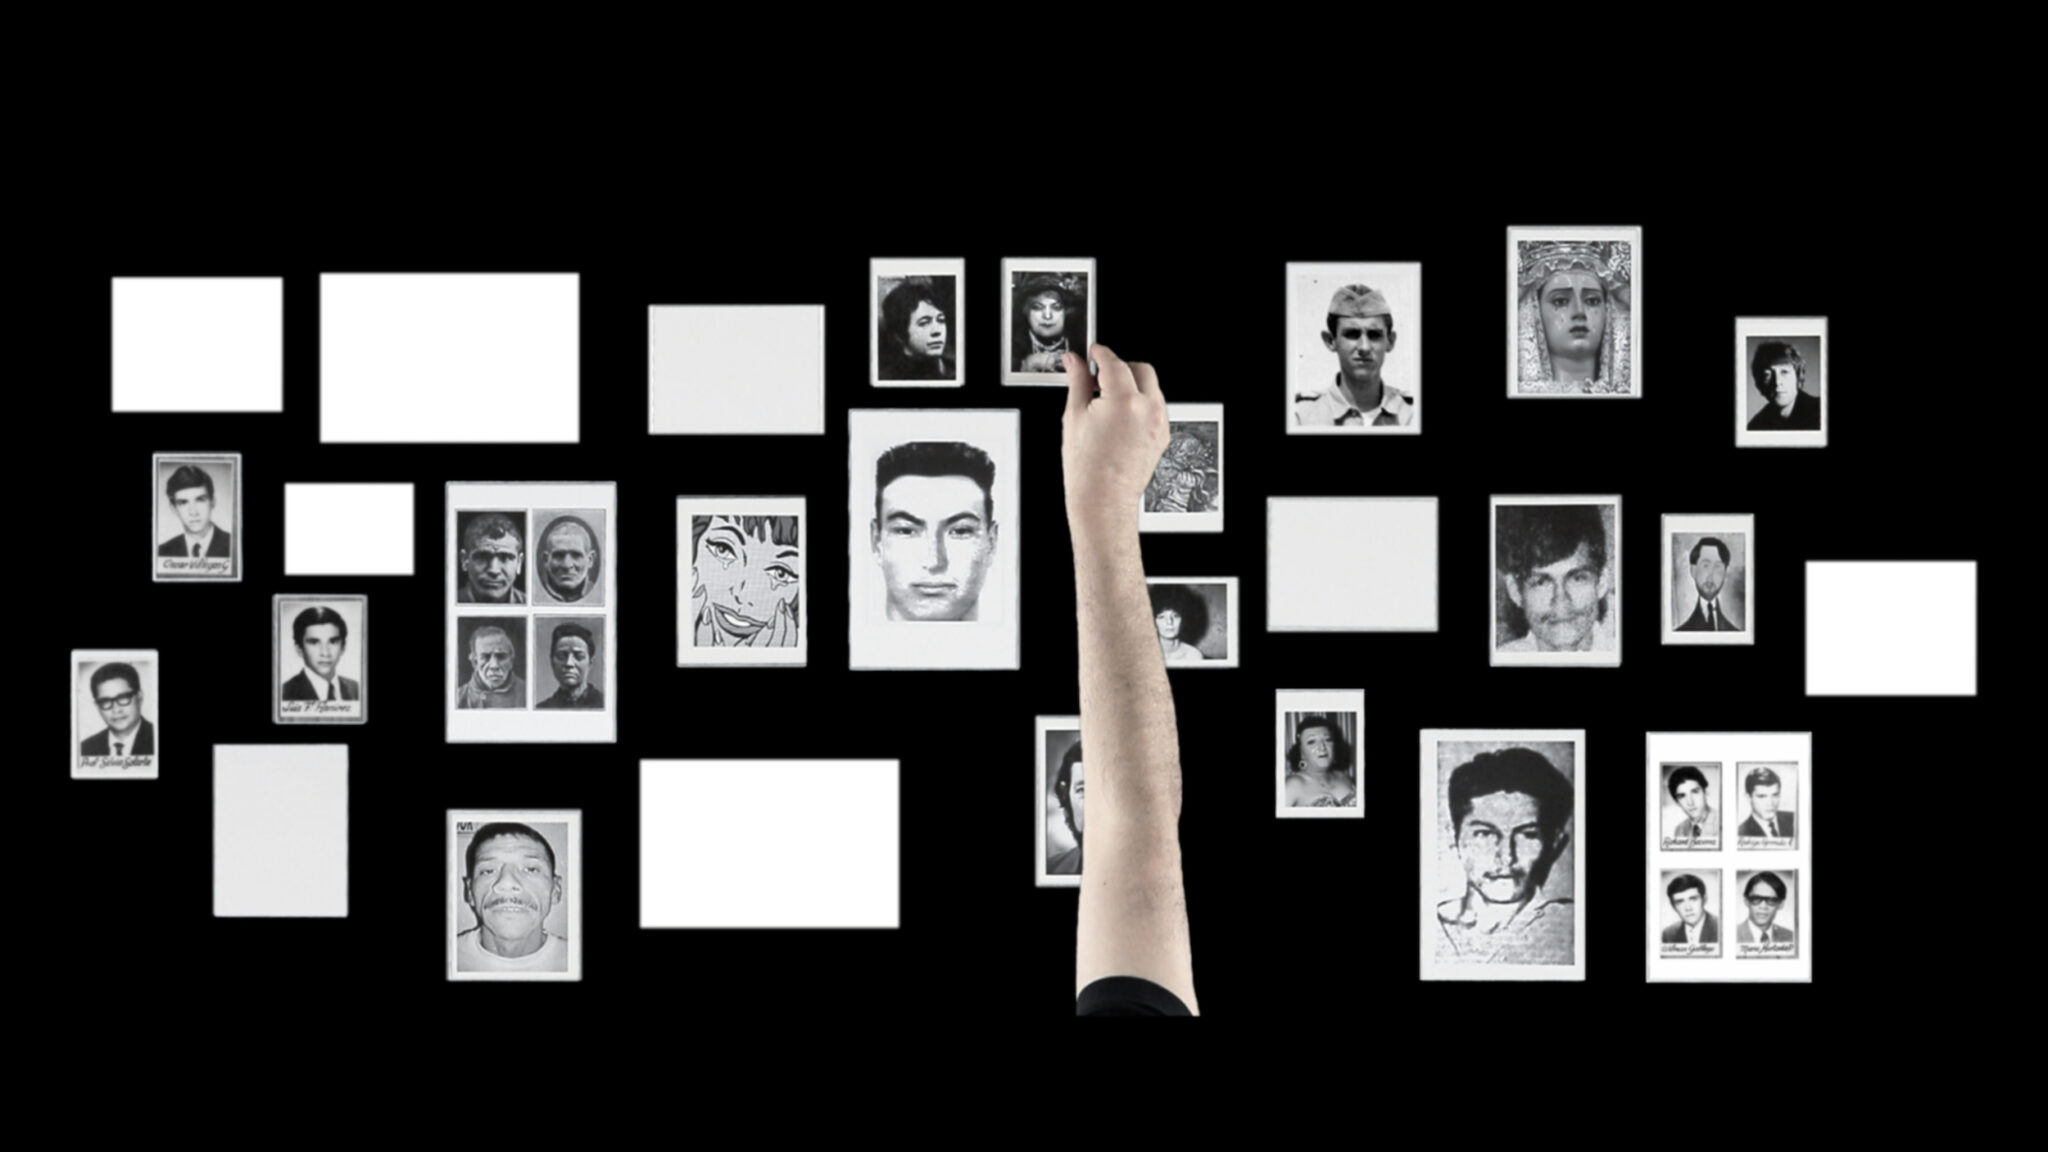 Un fondo negro rectangular visto desde arriba, con retratos de rostros de personas en blanco y negro, y rectángulos blancos vacíos. Una mano tocando uno de los retratos.